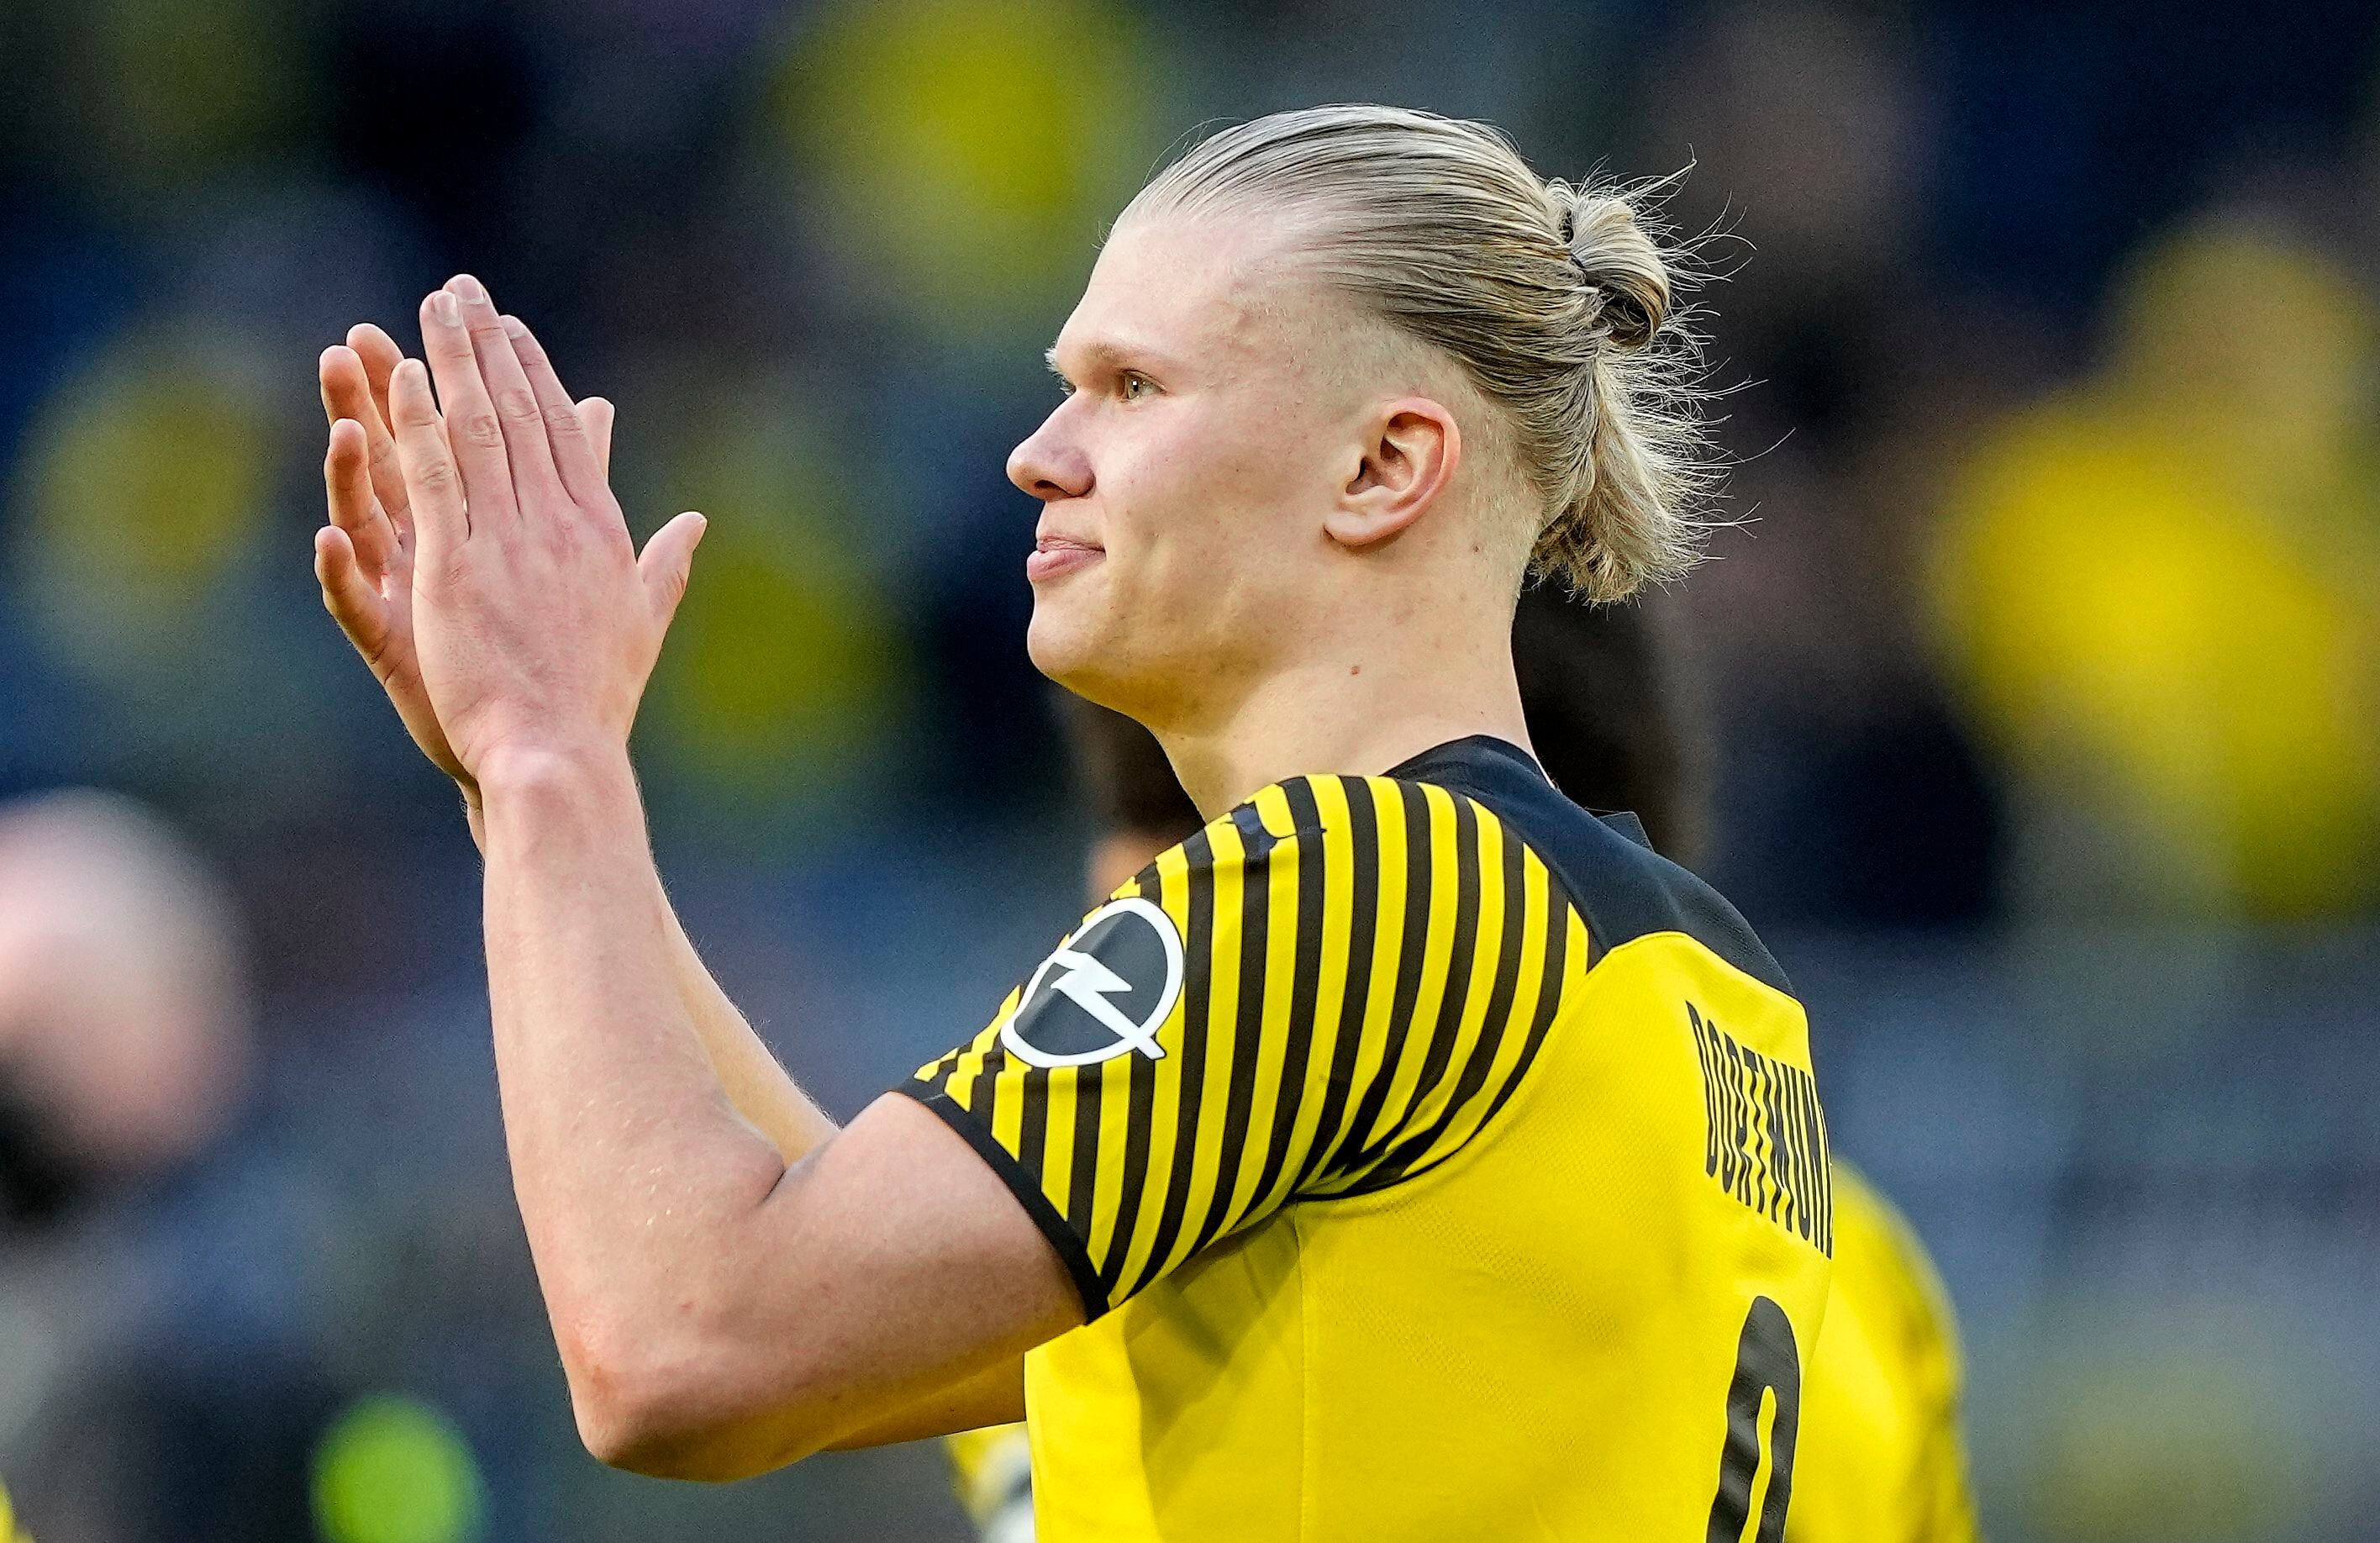 FOTBALL: Erling Braut Haaland spiller for den tyske klubben Borussia Dortmund. Nå nærmer han seg en ny klubb, men hvilken?